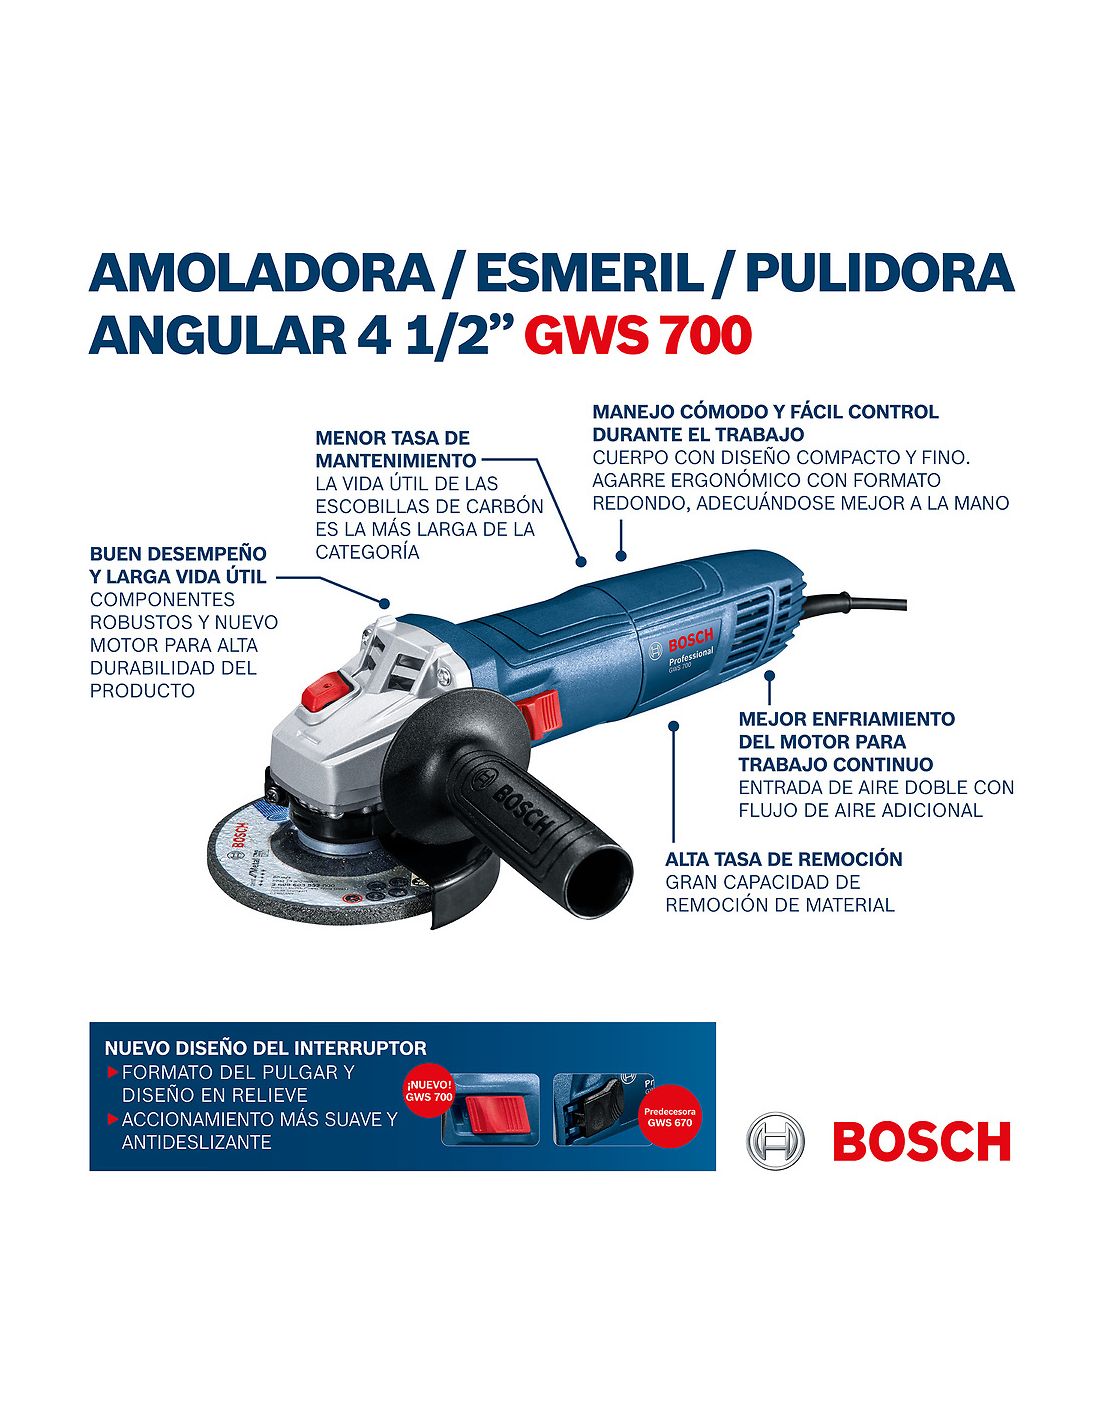 Amoladora Bosch 4 1/2 720w Profesional Azul (gws 700)